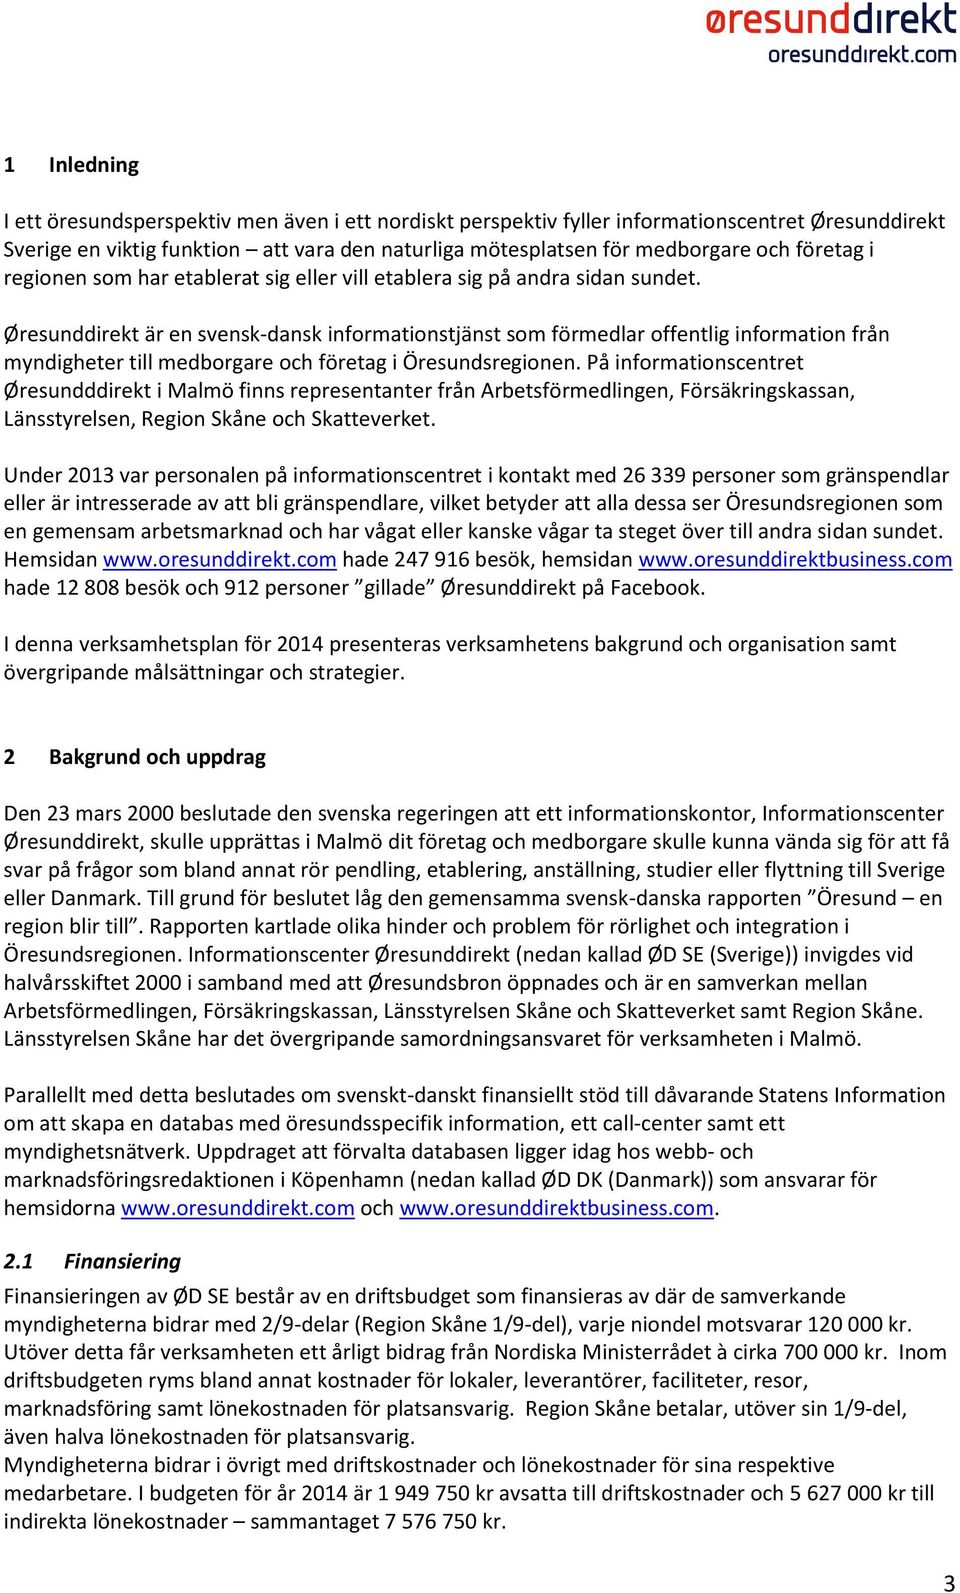 Øresunddirekt är en svensk-dansk informationstjänst som förmedlar offentlig information från myndigheter till medborgare och företag i Öresundsregionen.